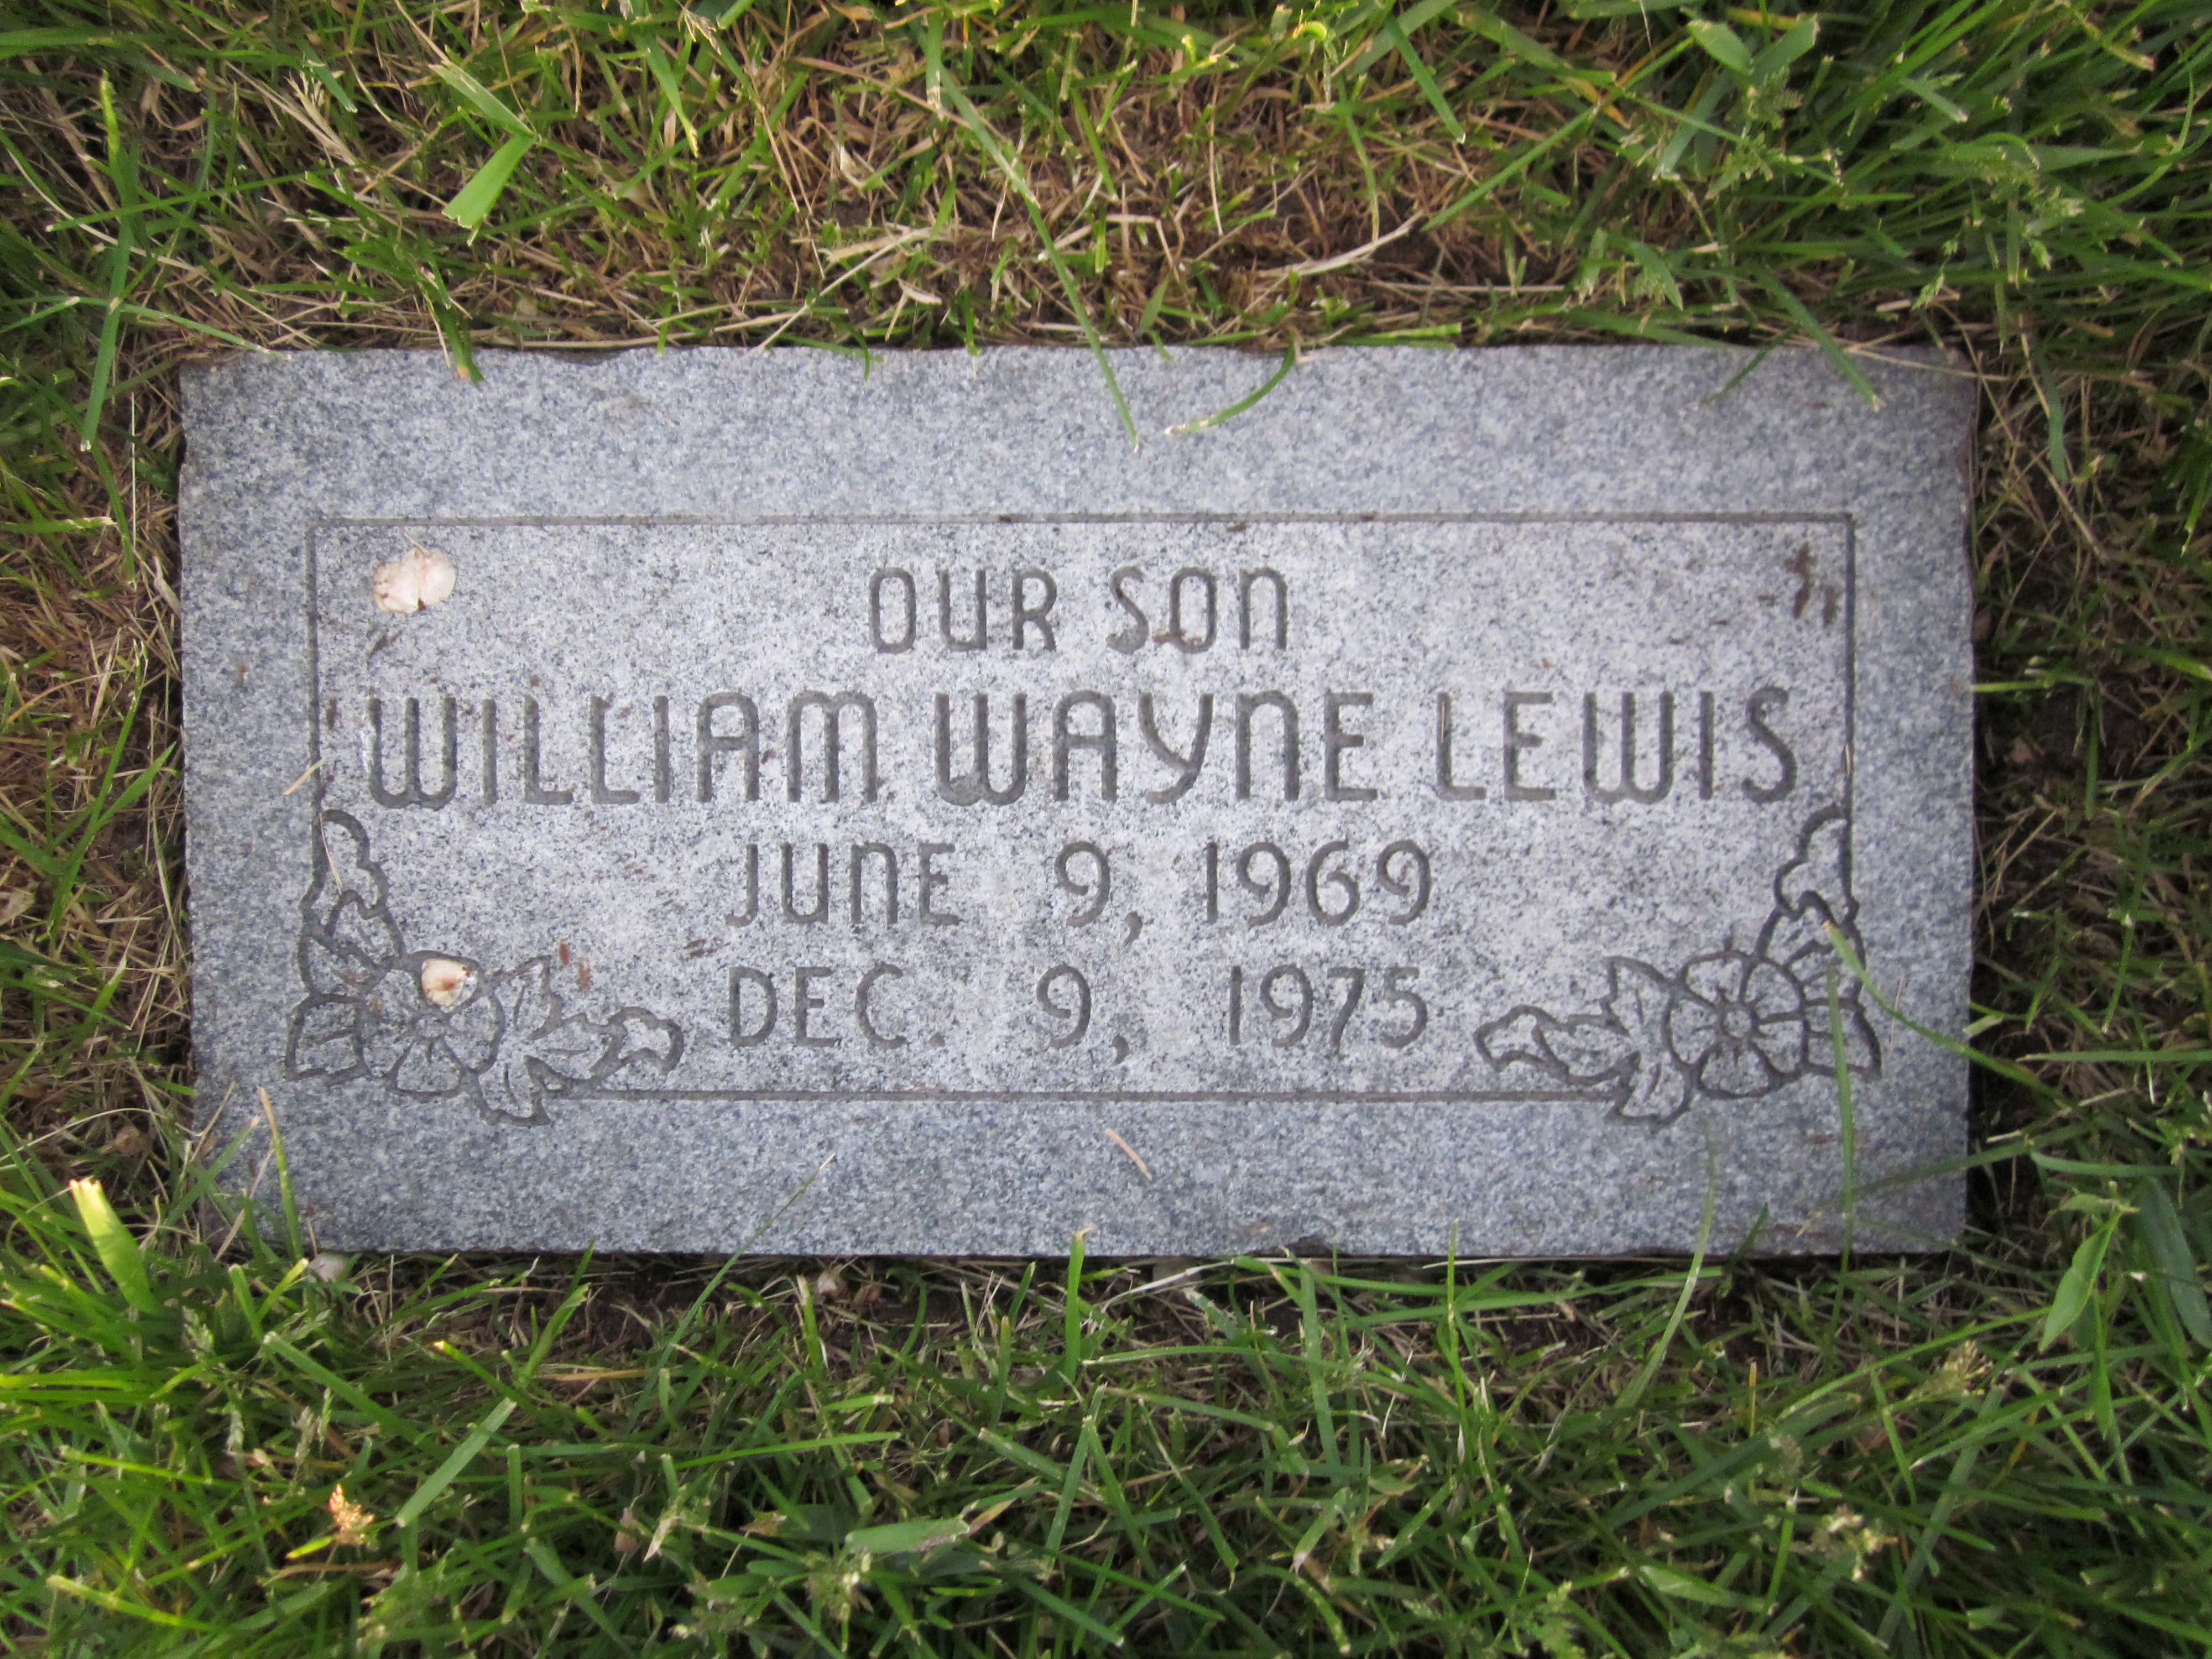 William Wayne Lewis